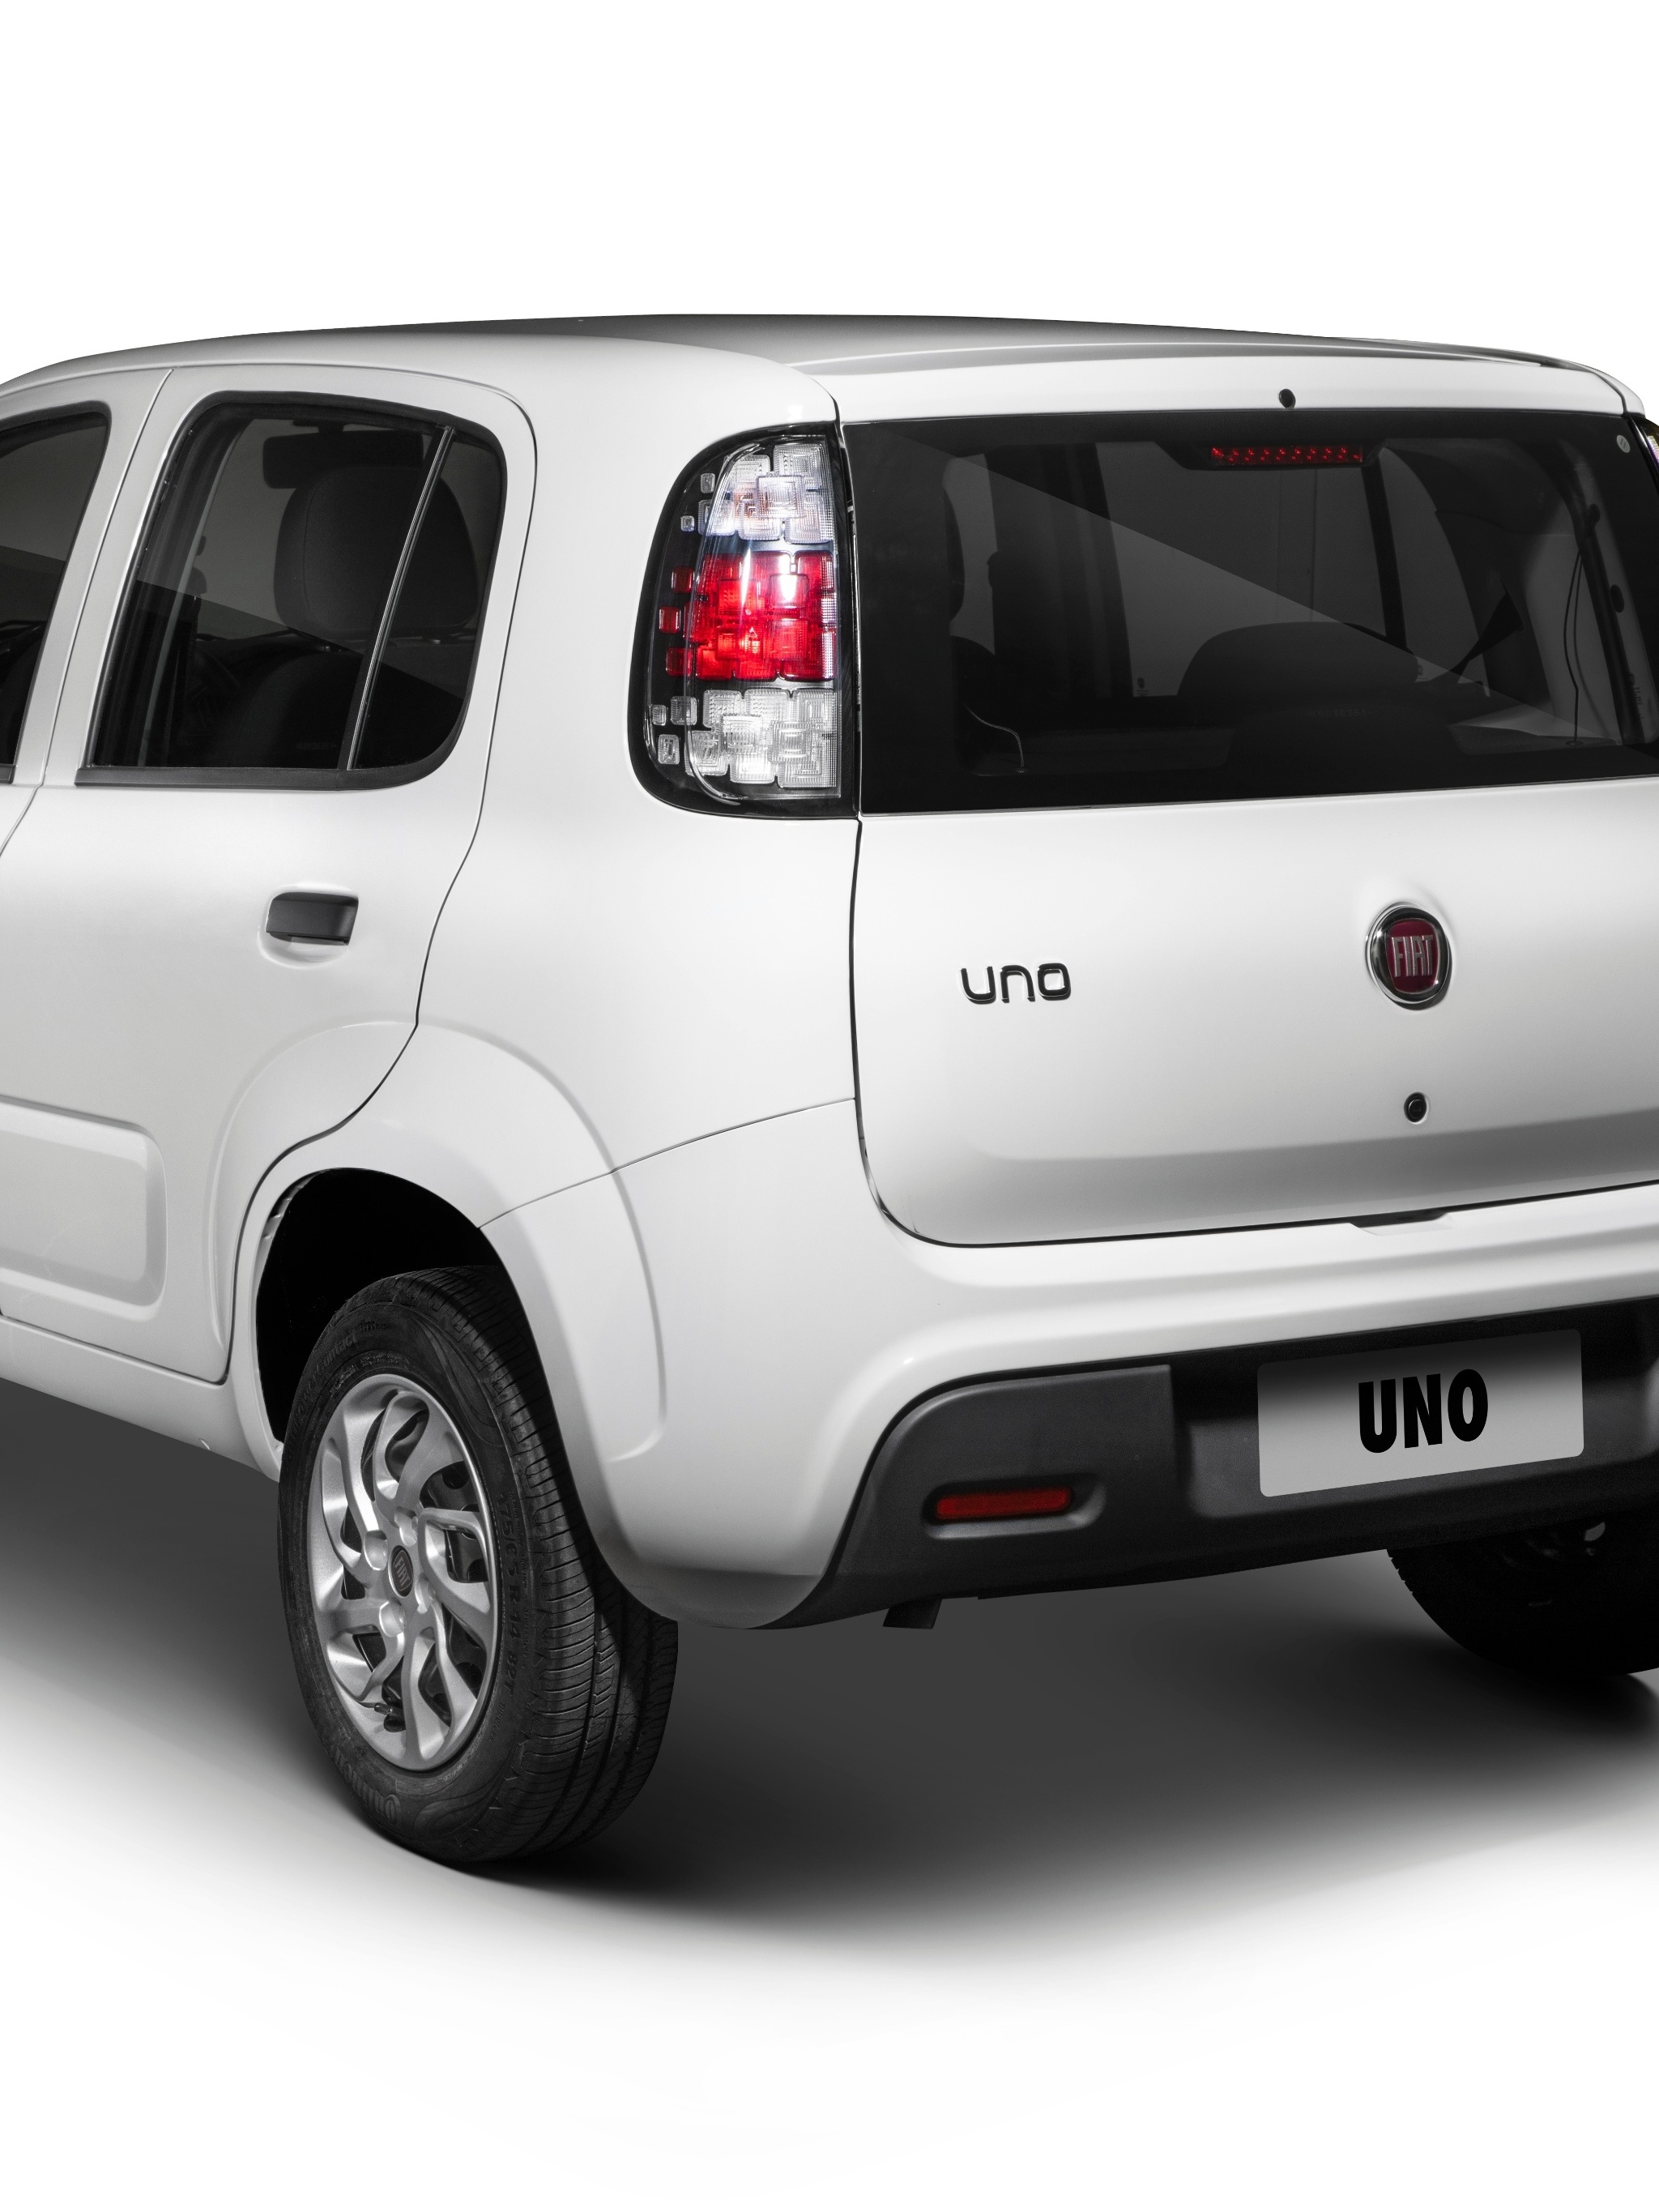 Fiat prepara morte do Uno e confirma 4 lançamentos de 2021 - 03